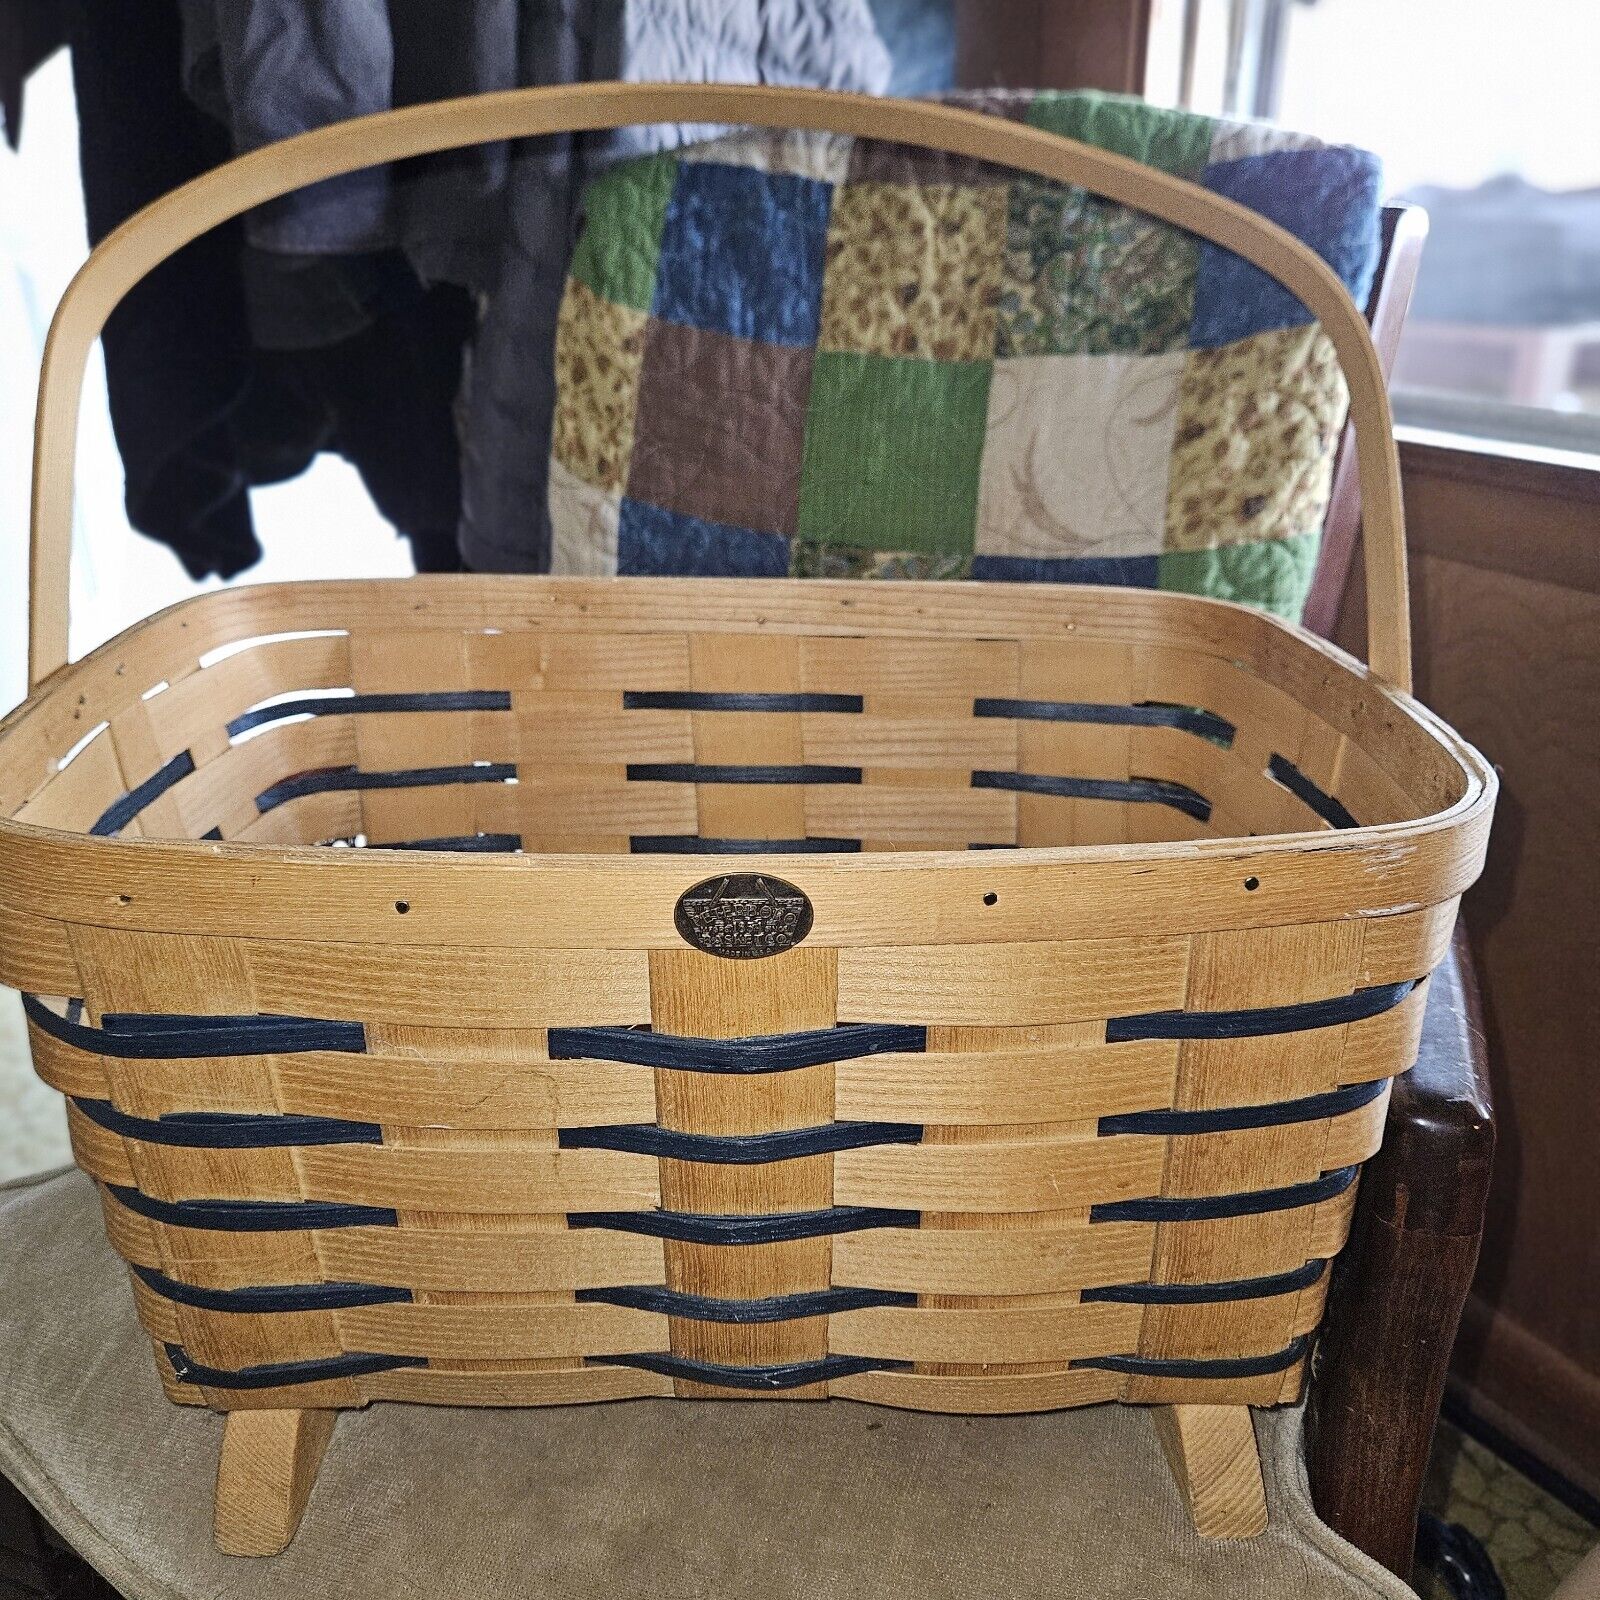 VTG Peterboro Basket Co. Large Magazine/Firewood/Kindling Storage Basket 